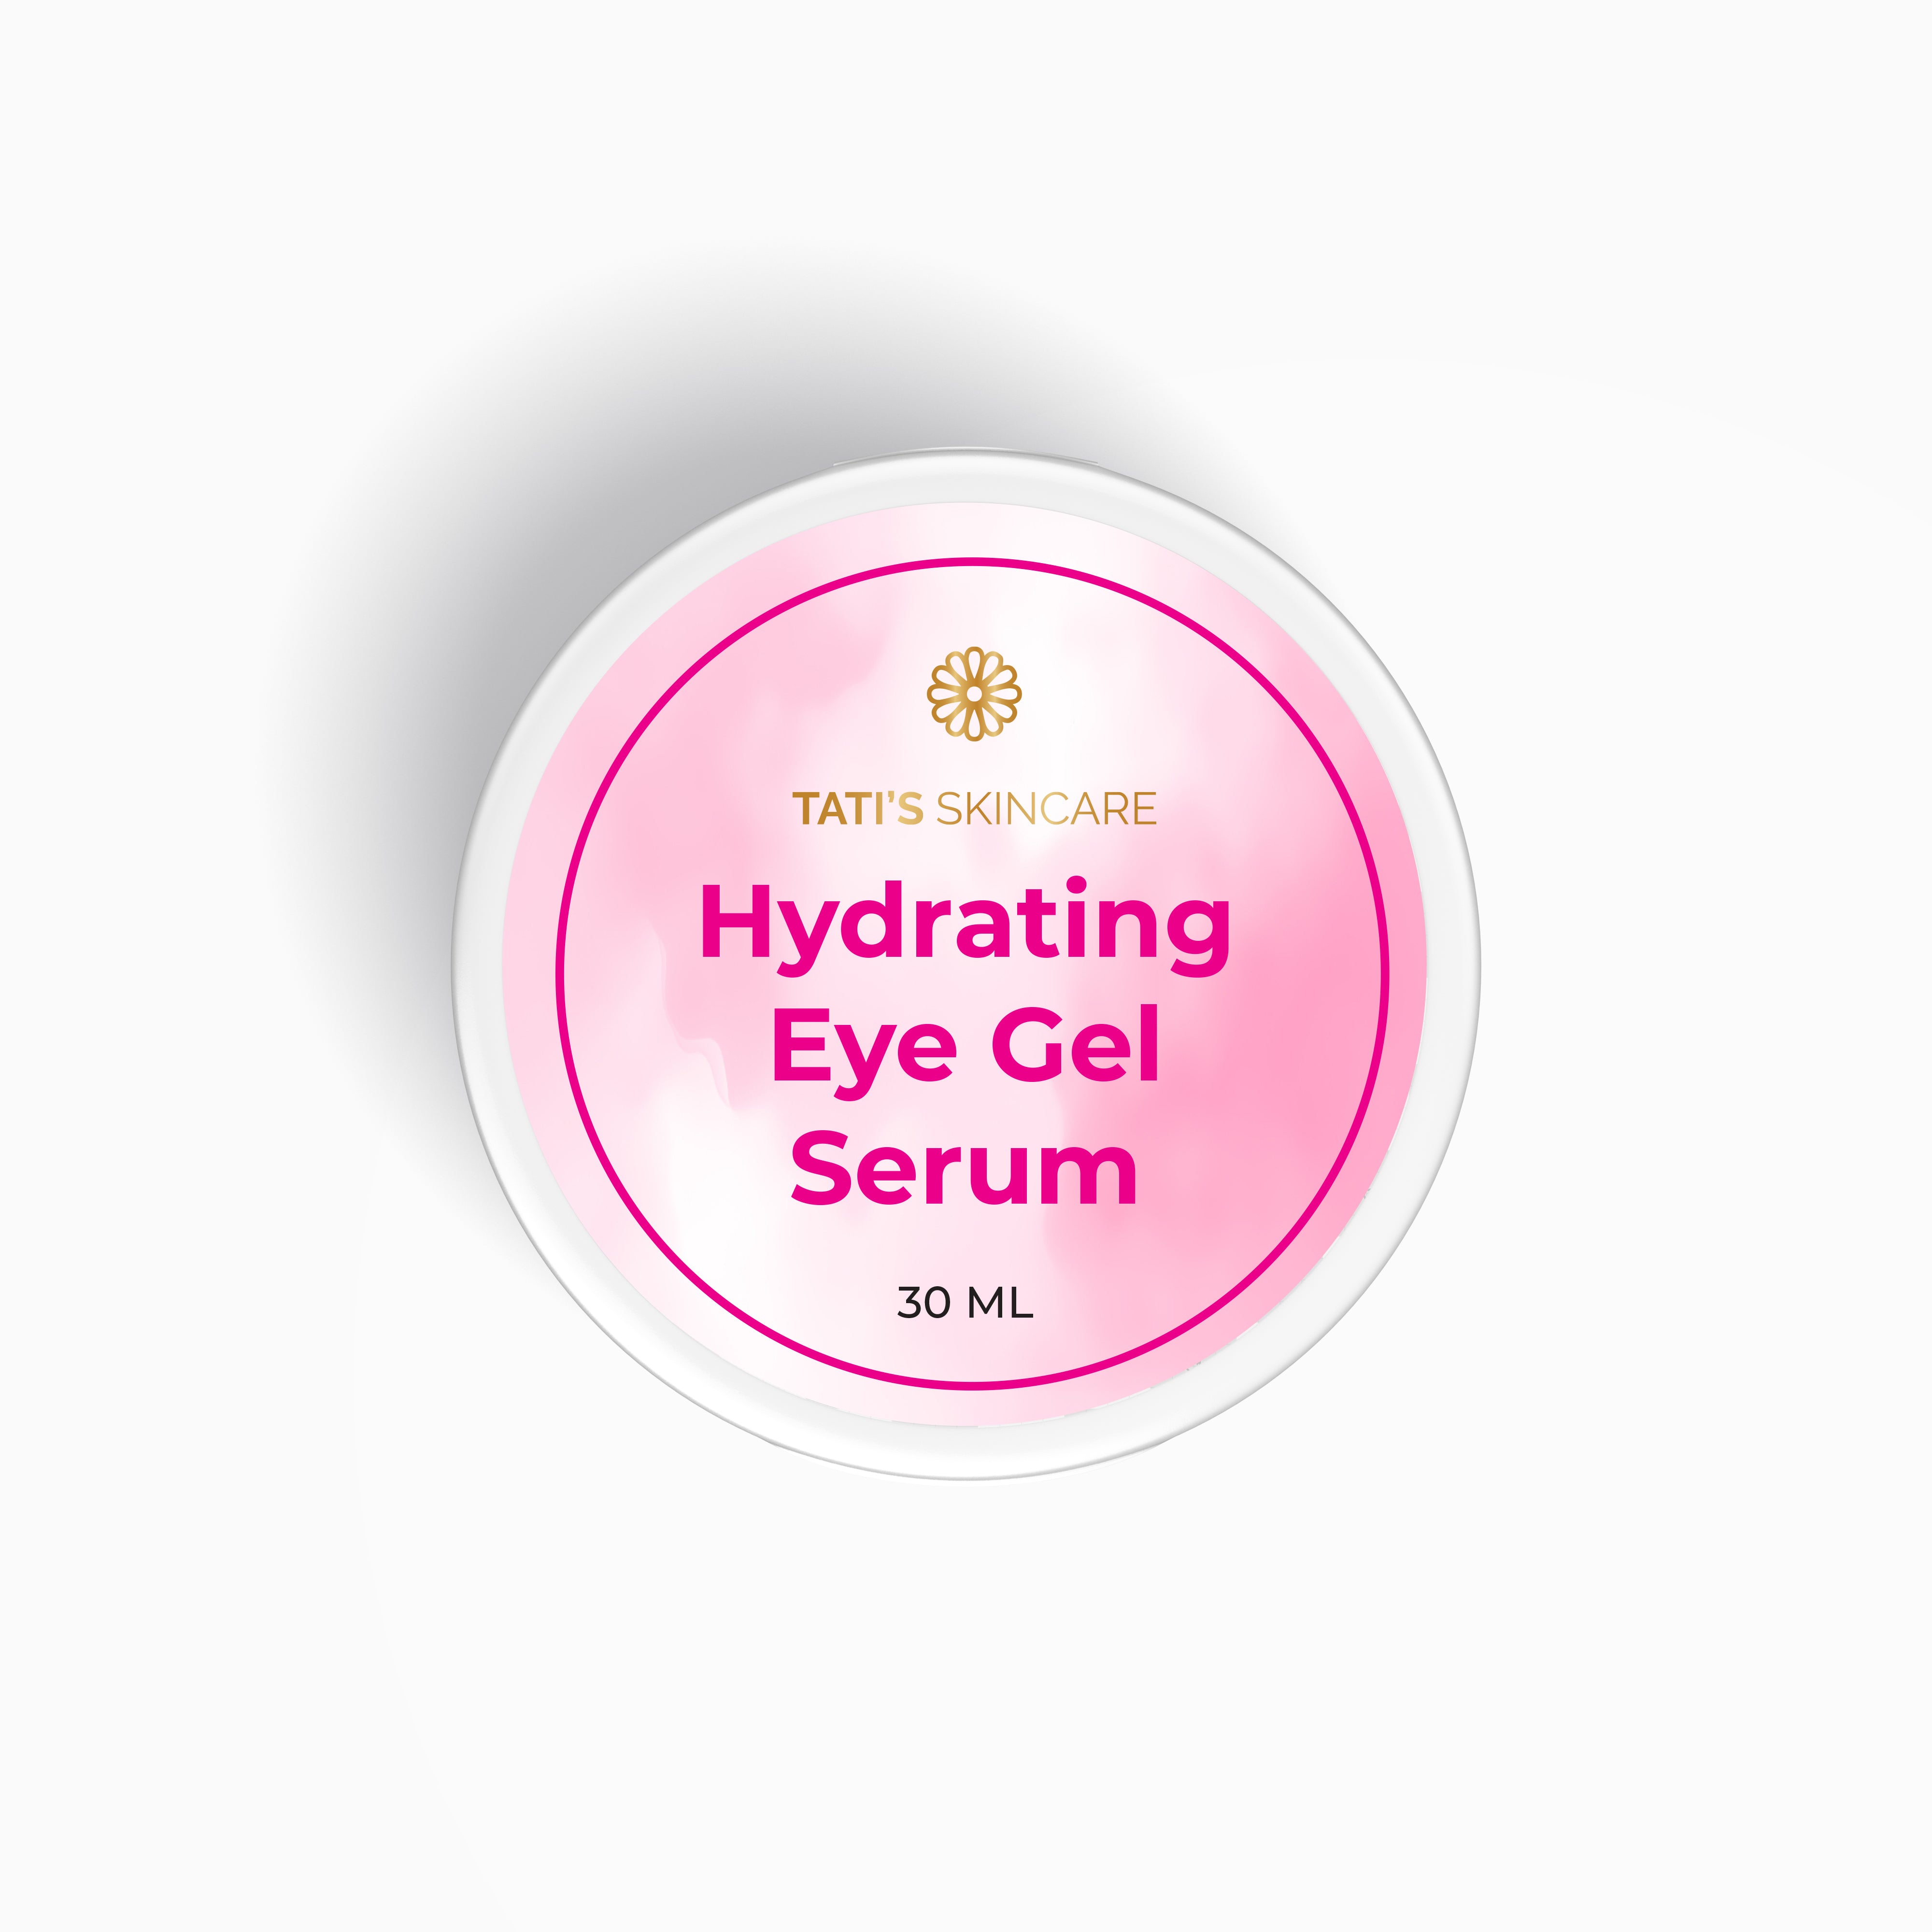 Hydrating Eye Gel Serum